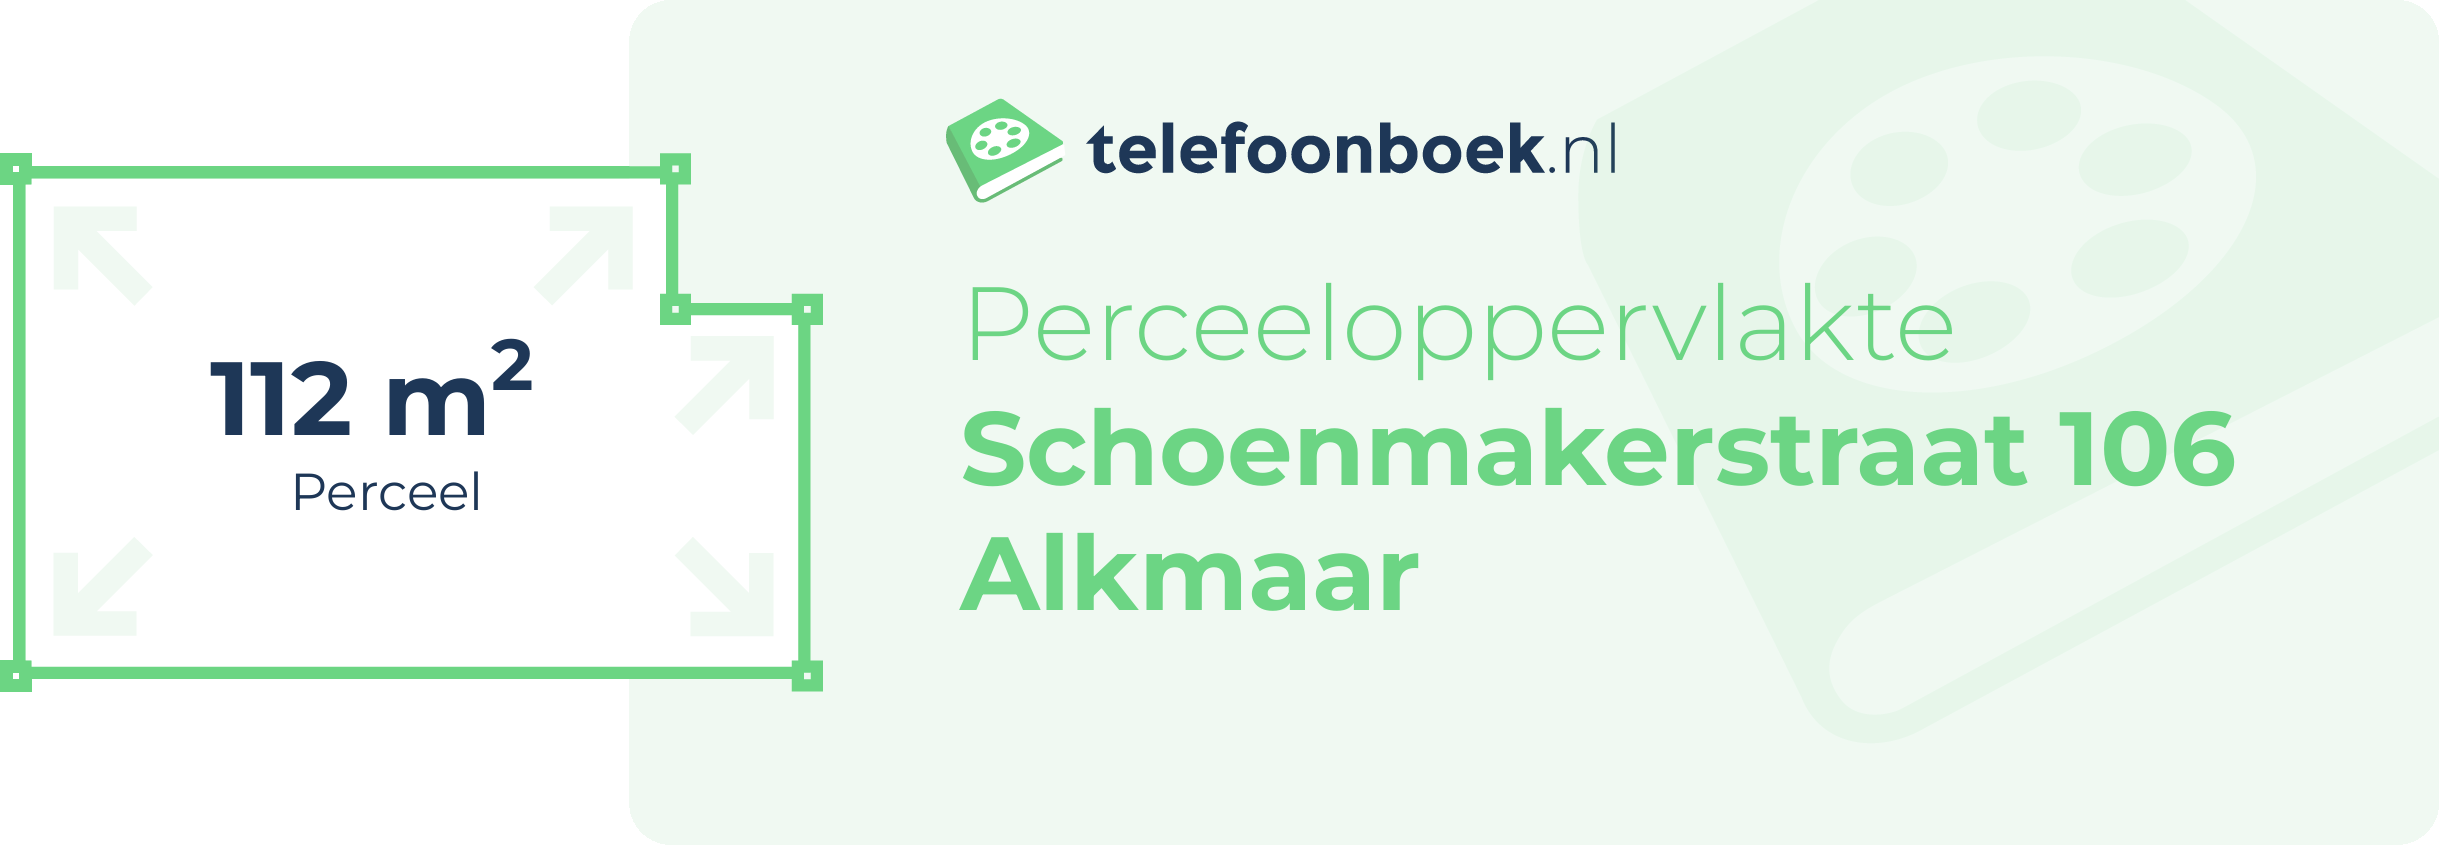 Perceeloppervlakte Schoenmakerstraat 106 Alkmaar